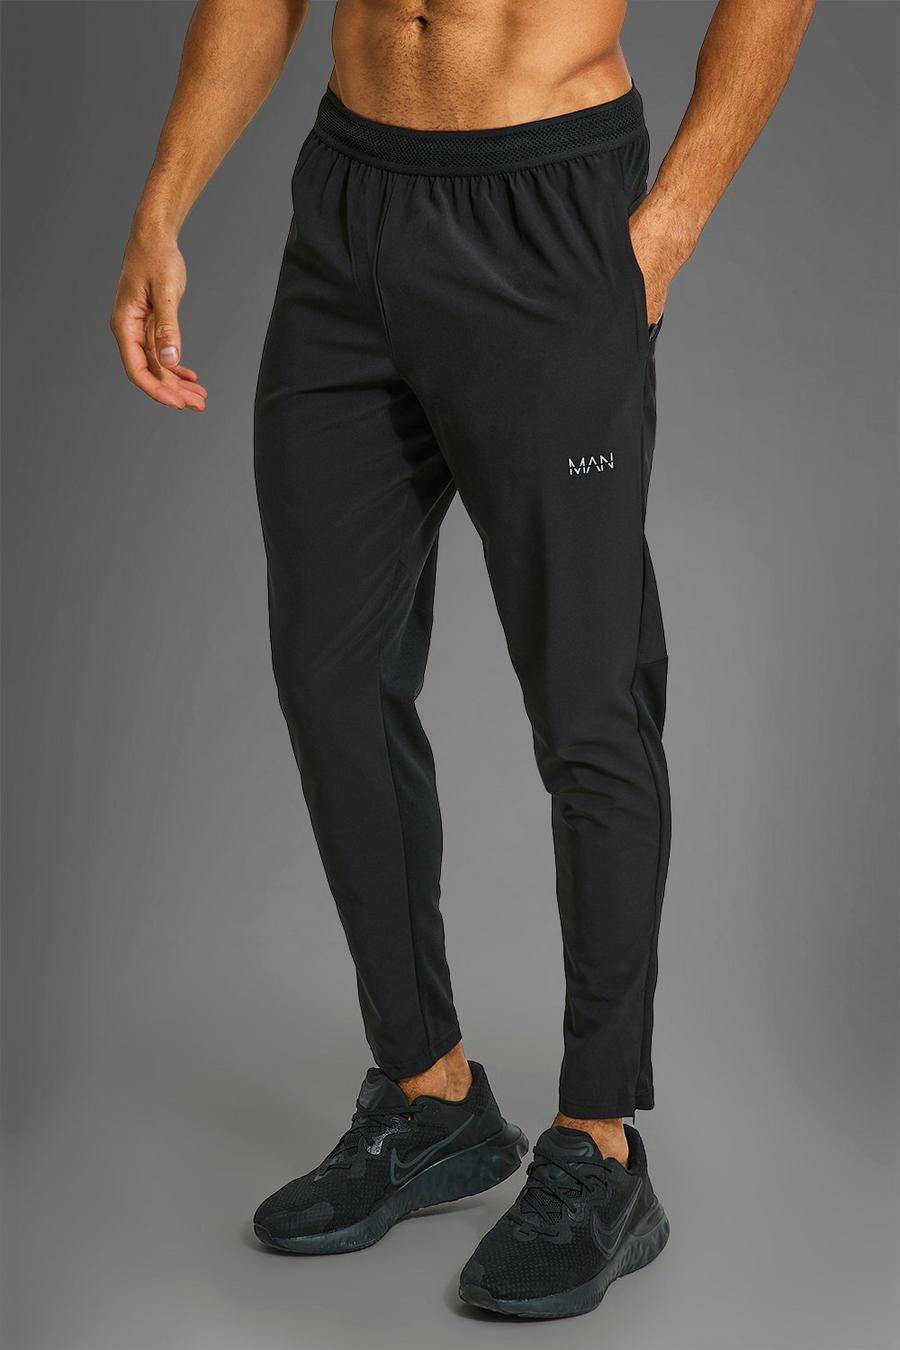 Pantaloni tuta Man Active Gym per alta performance con tasche e zip, Black nero